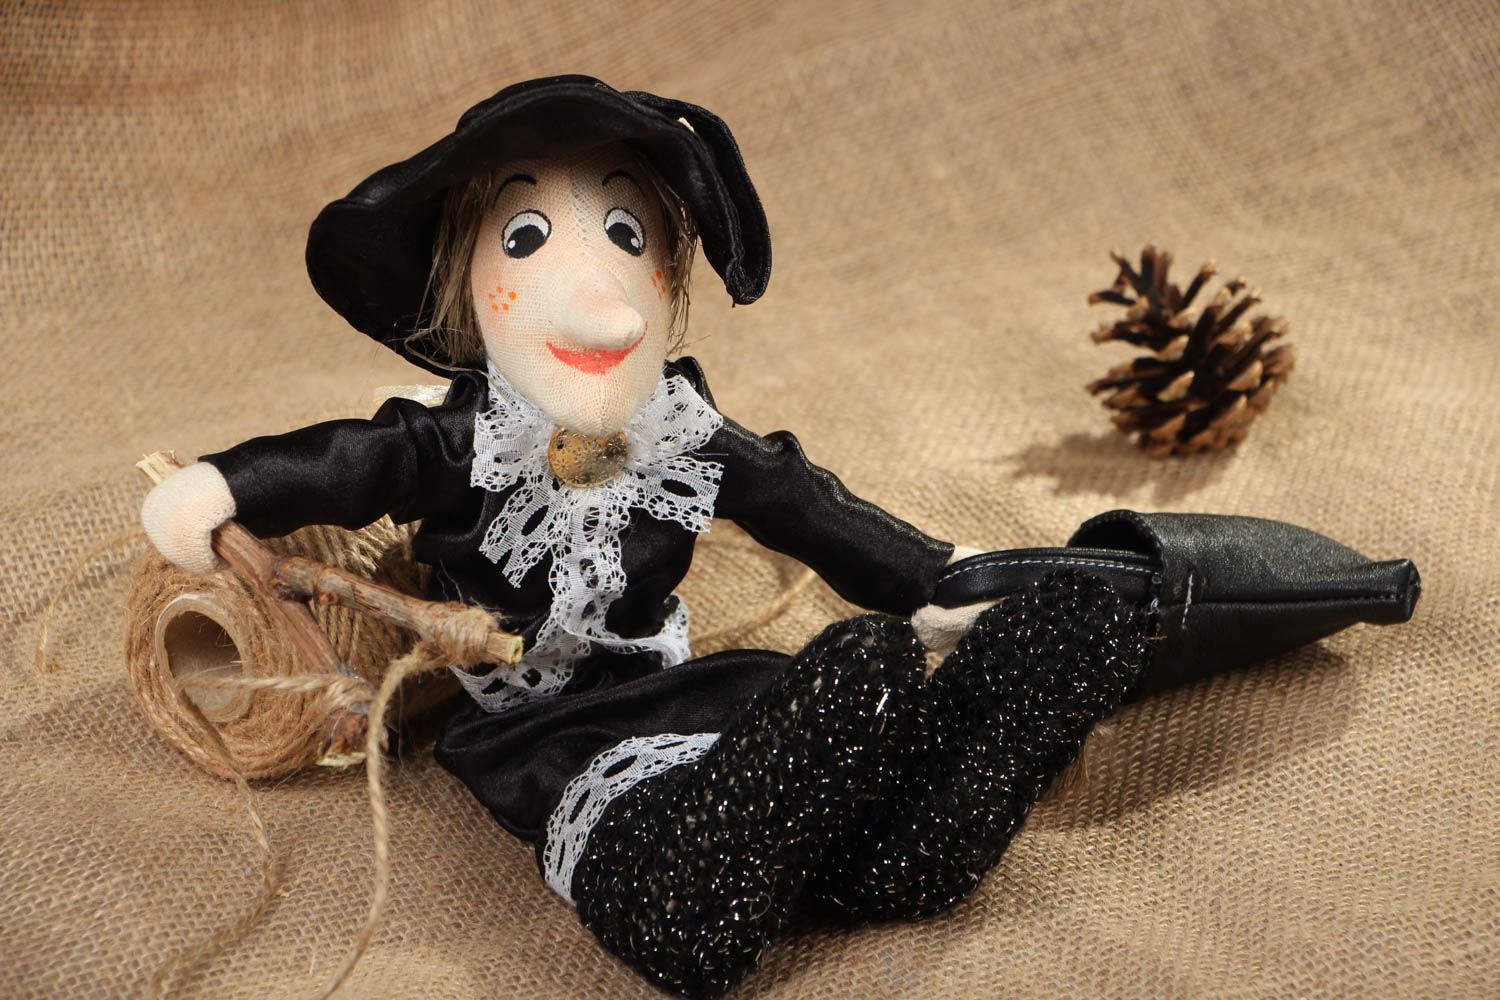 Textil Puppe handmade Dame in Schwarz foto 5